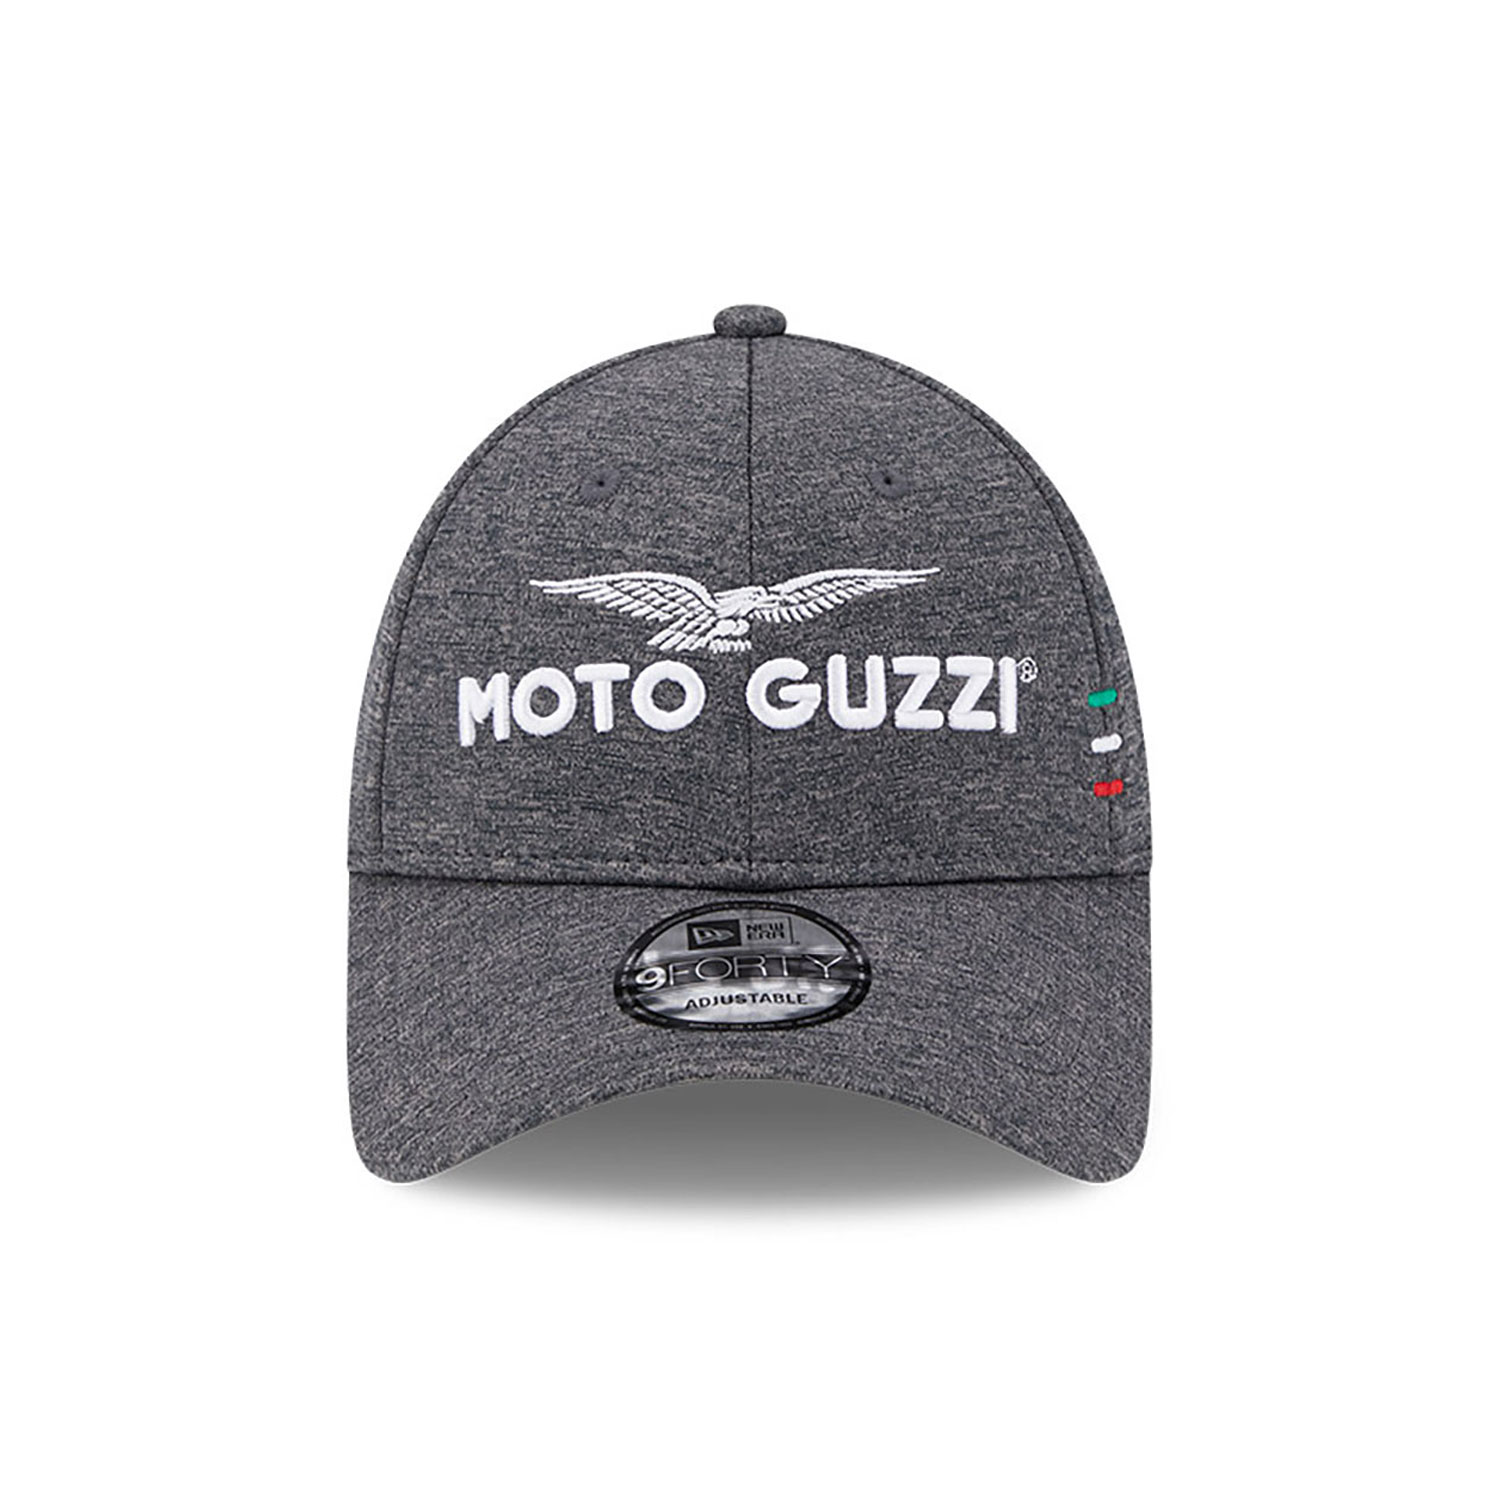 Moto Guzzi Shadow Tech Grigio 9FORTY Berretto